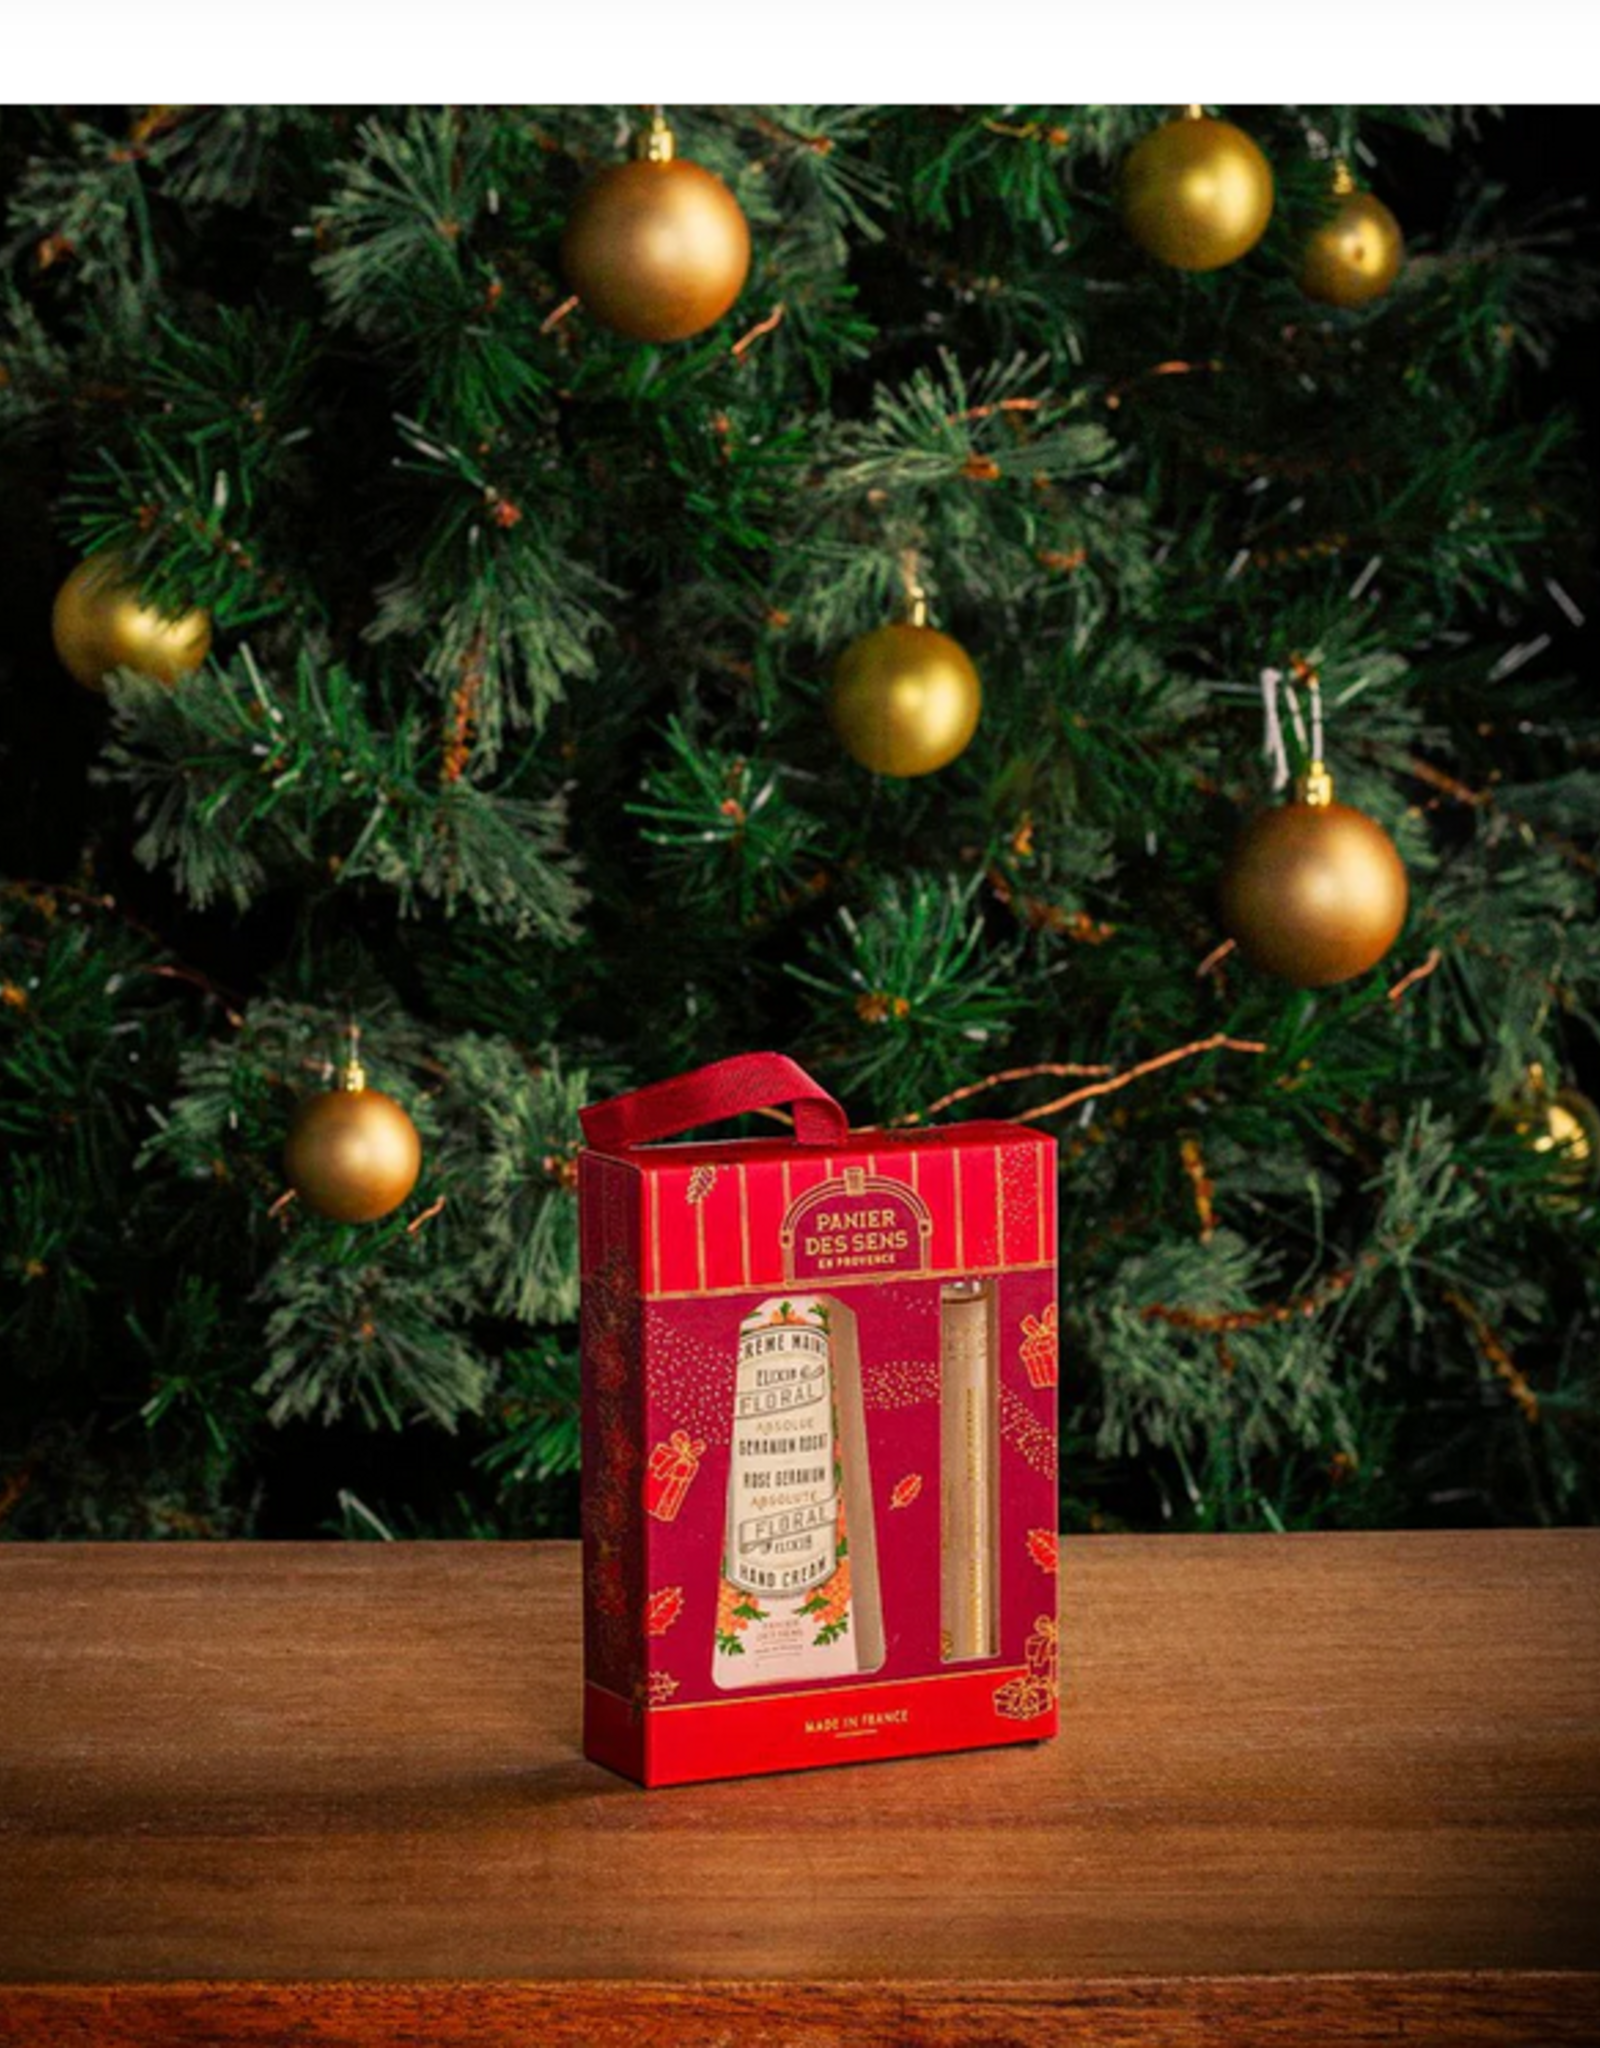 Panier des Sens Christmas  gift set Duo Geranium Rosat - Eau de toilette roll-on 10ml and hand cream 30ml